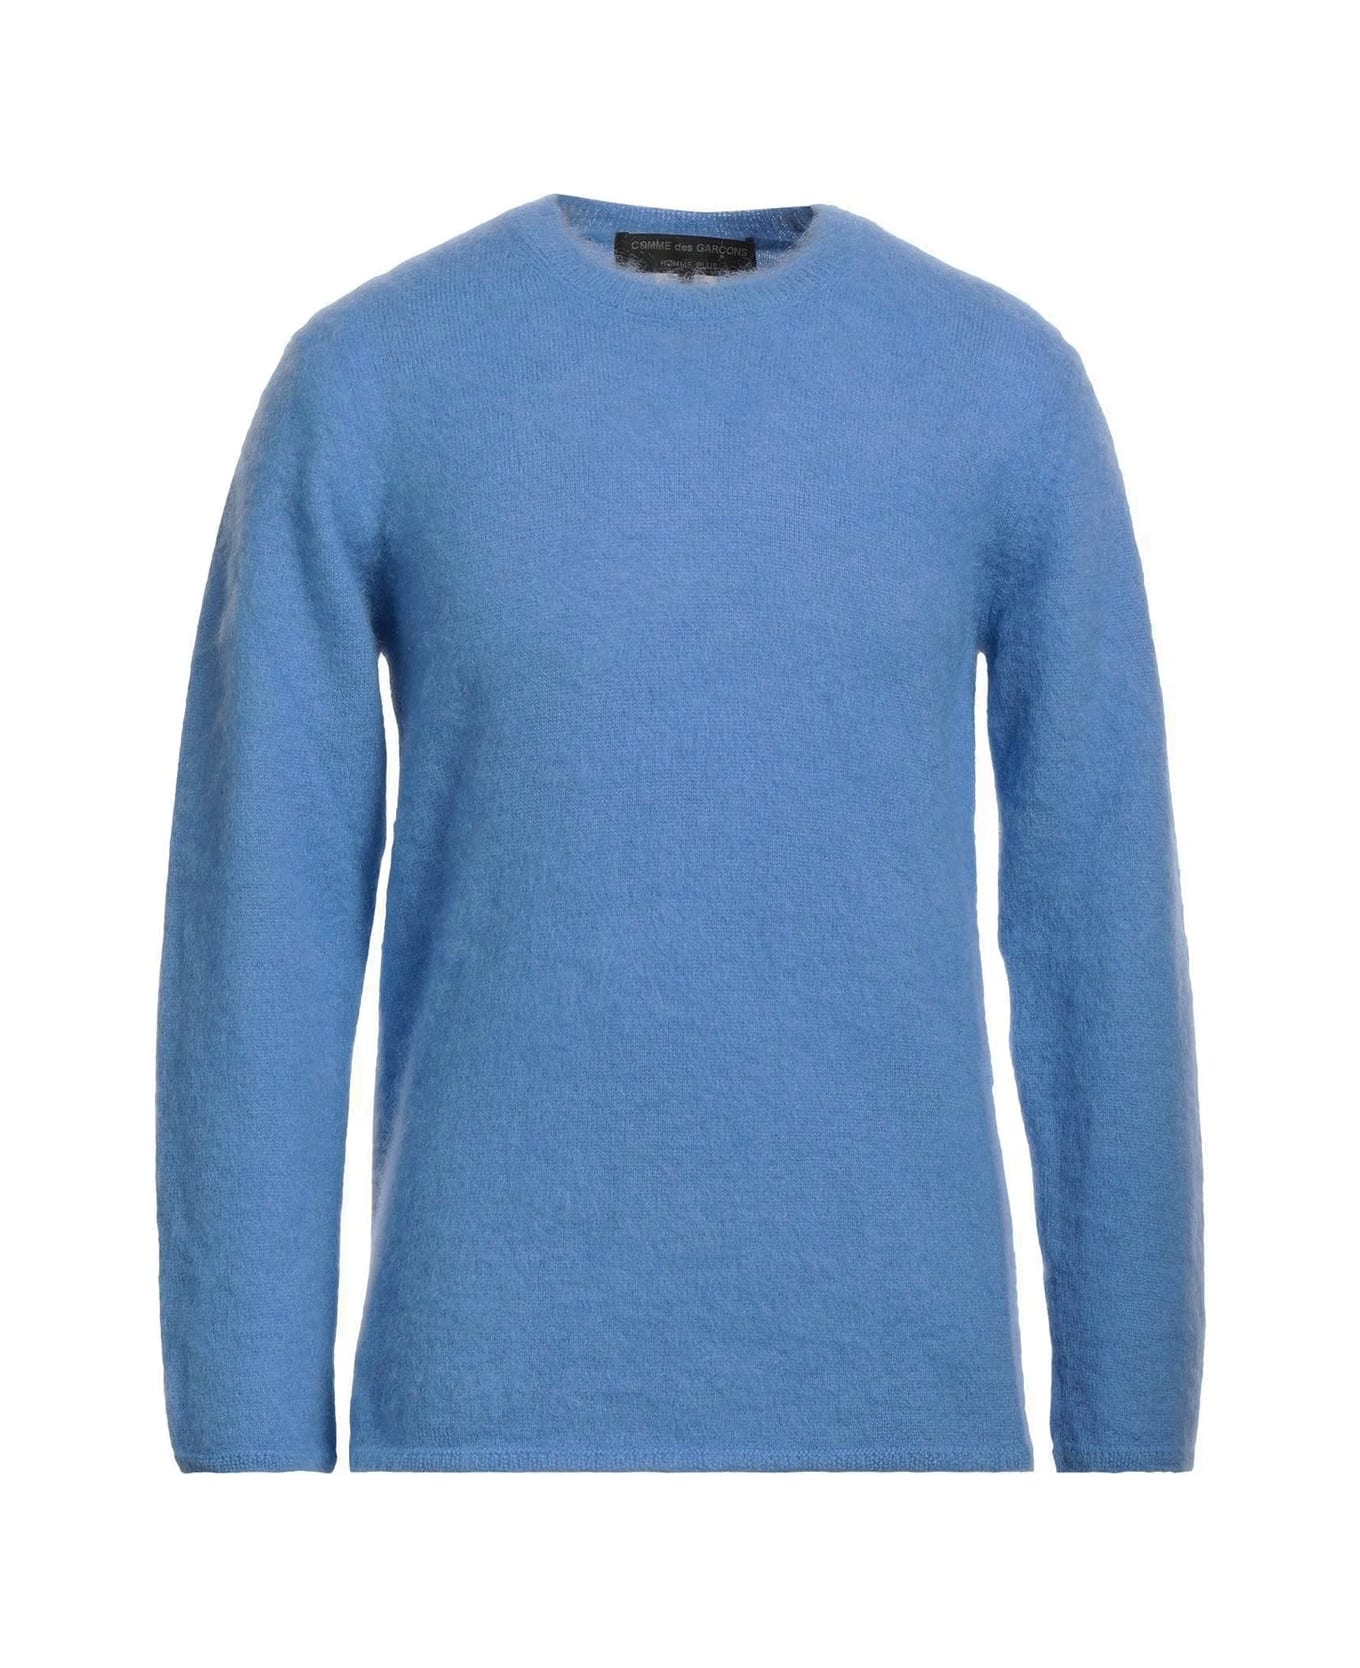 Comme des Garçons Mohair Blend Sweater - Blue